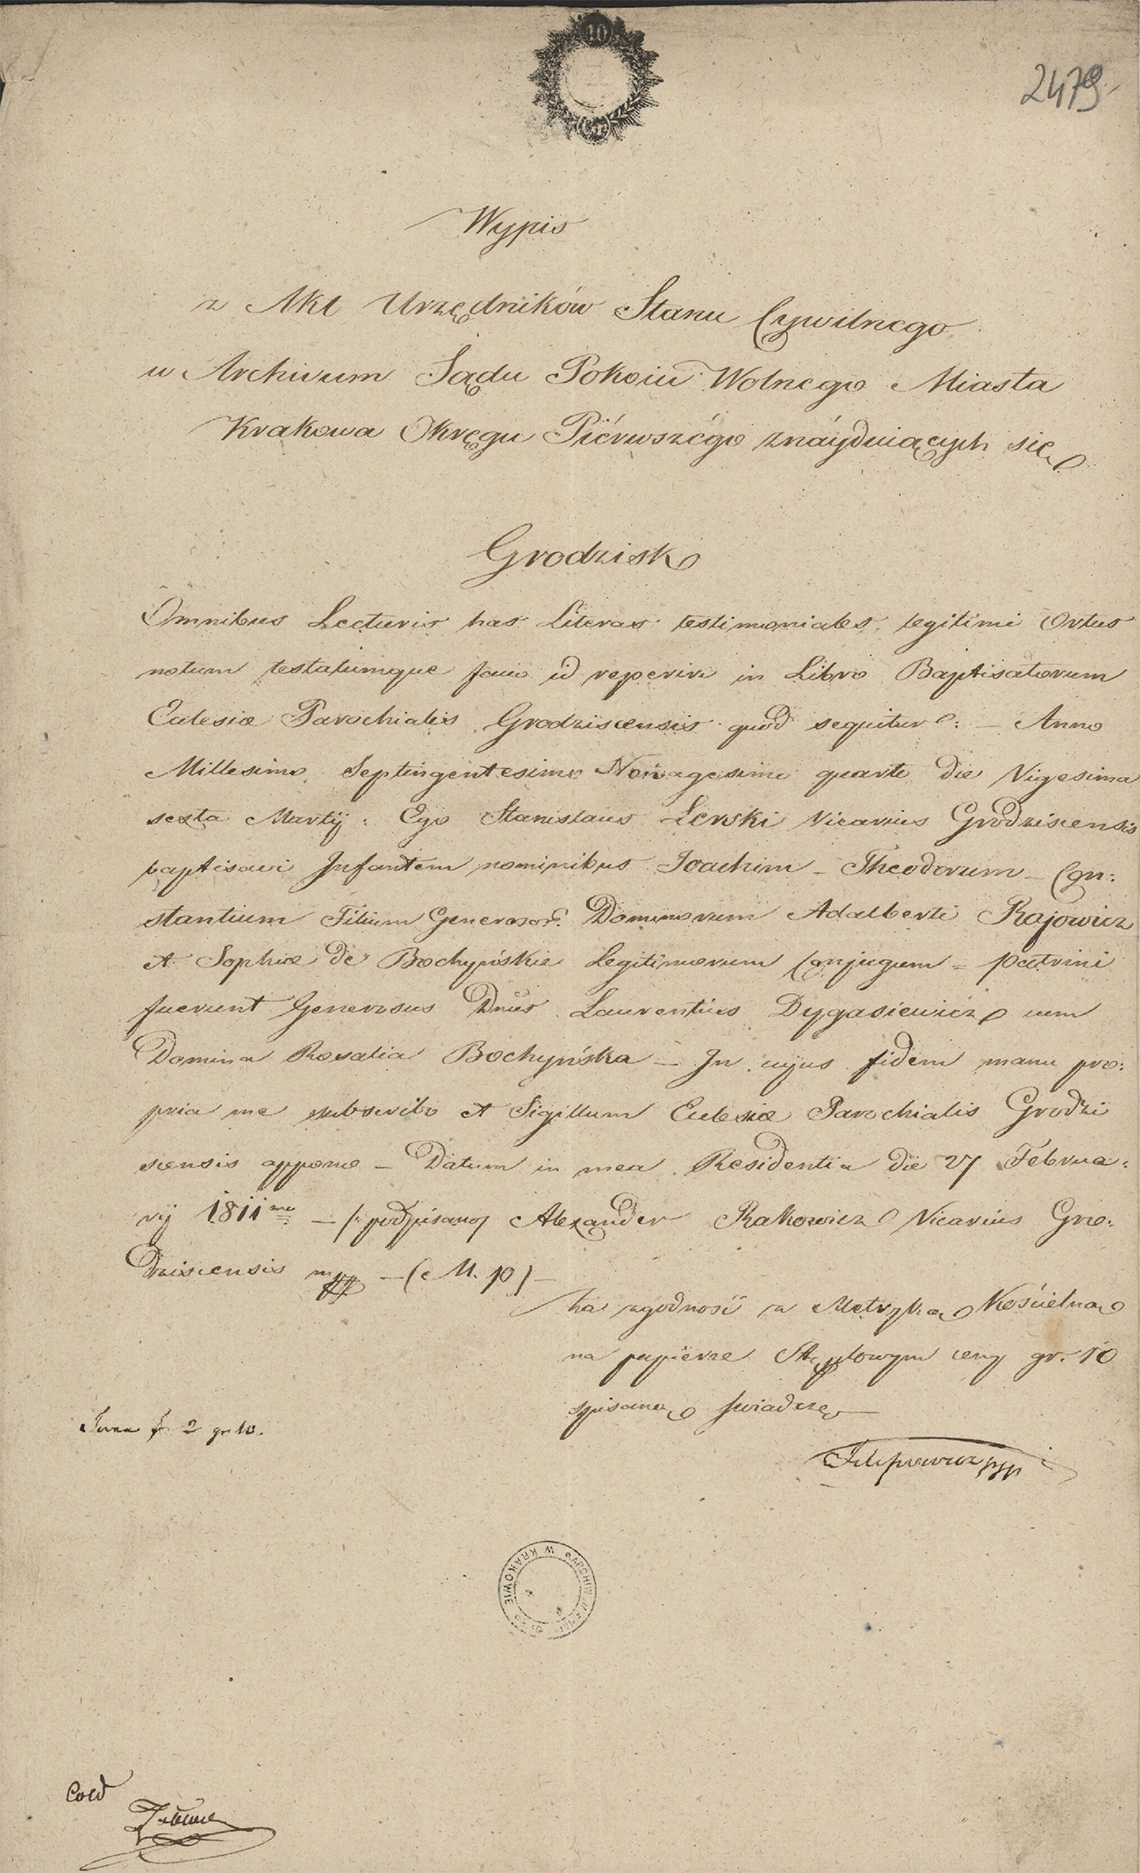 Alegaty do małżeństwa Joachim Teodor Konstanty & Julia hr. Lanckorońska (13.10.1834 r.) (1)